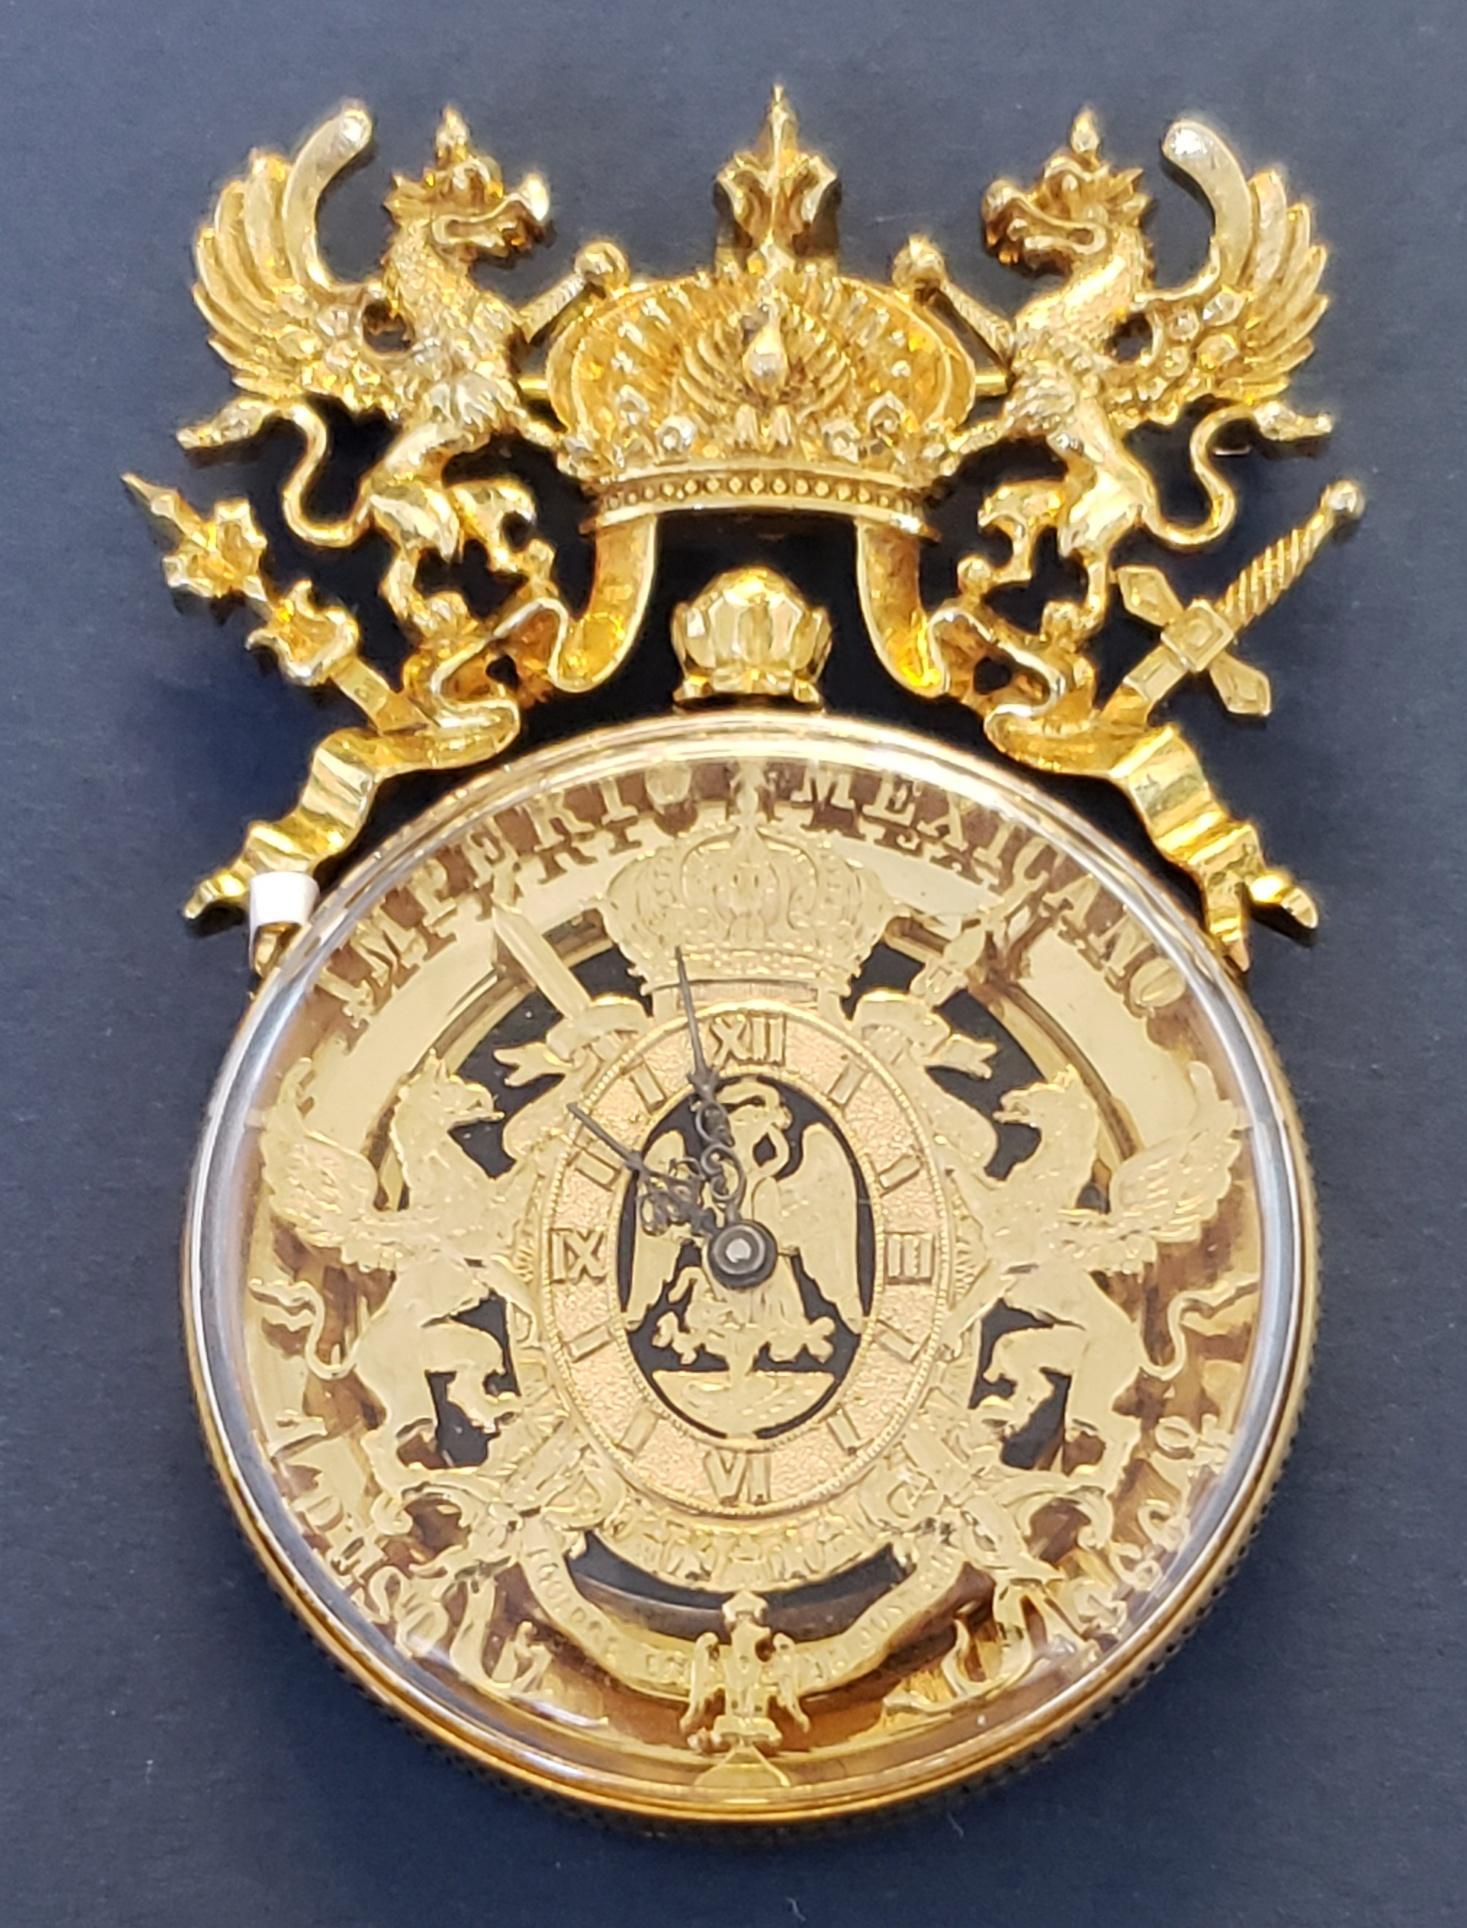 Paul Flato Imperio Mexicano 1866 One Peso Watch/Pin/Pendant 18K 44.4g For Sale 2